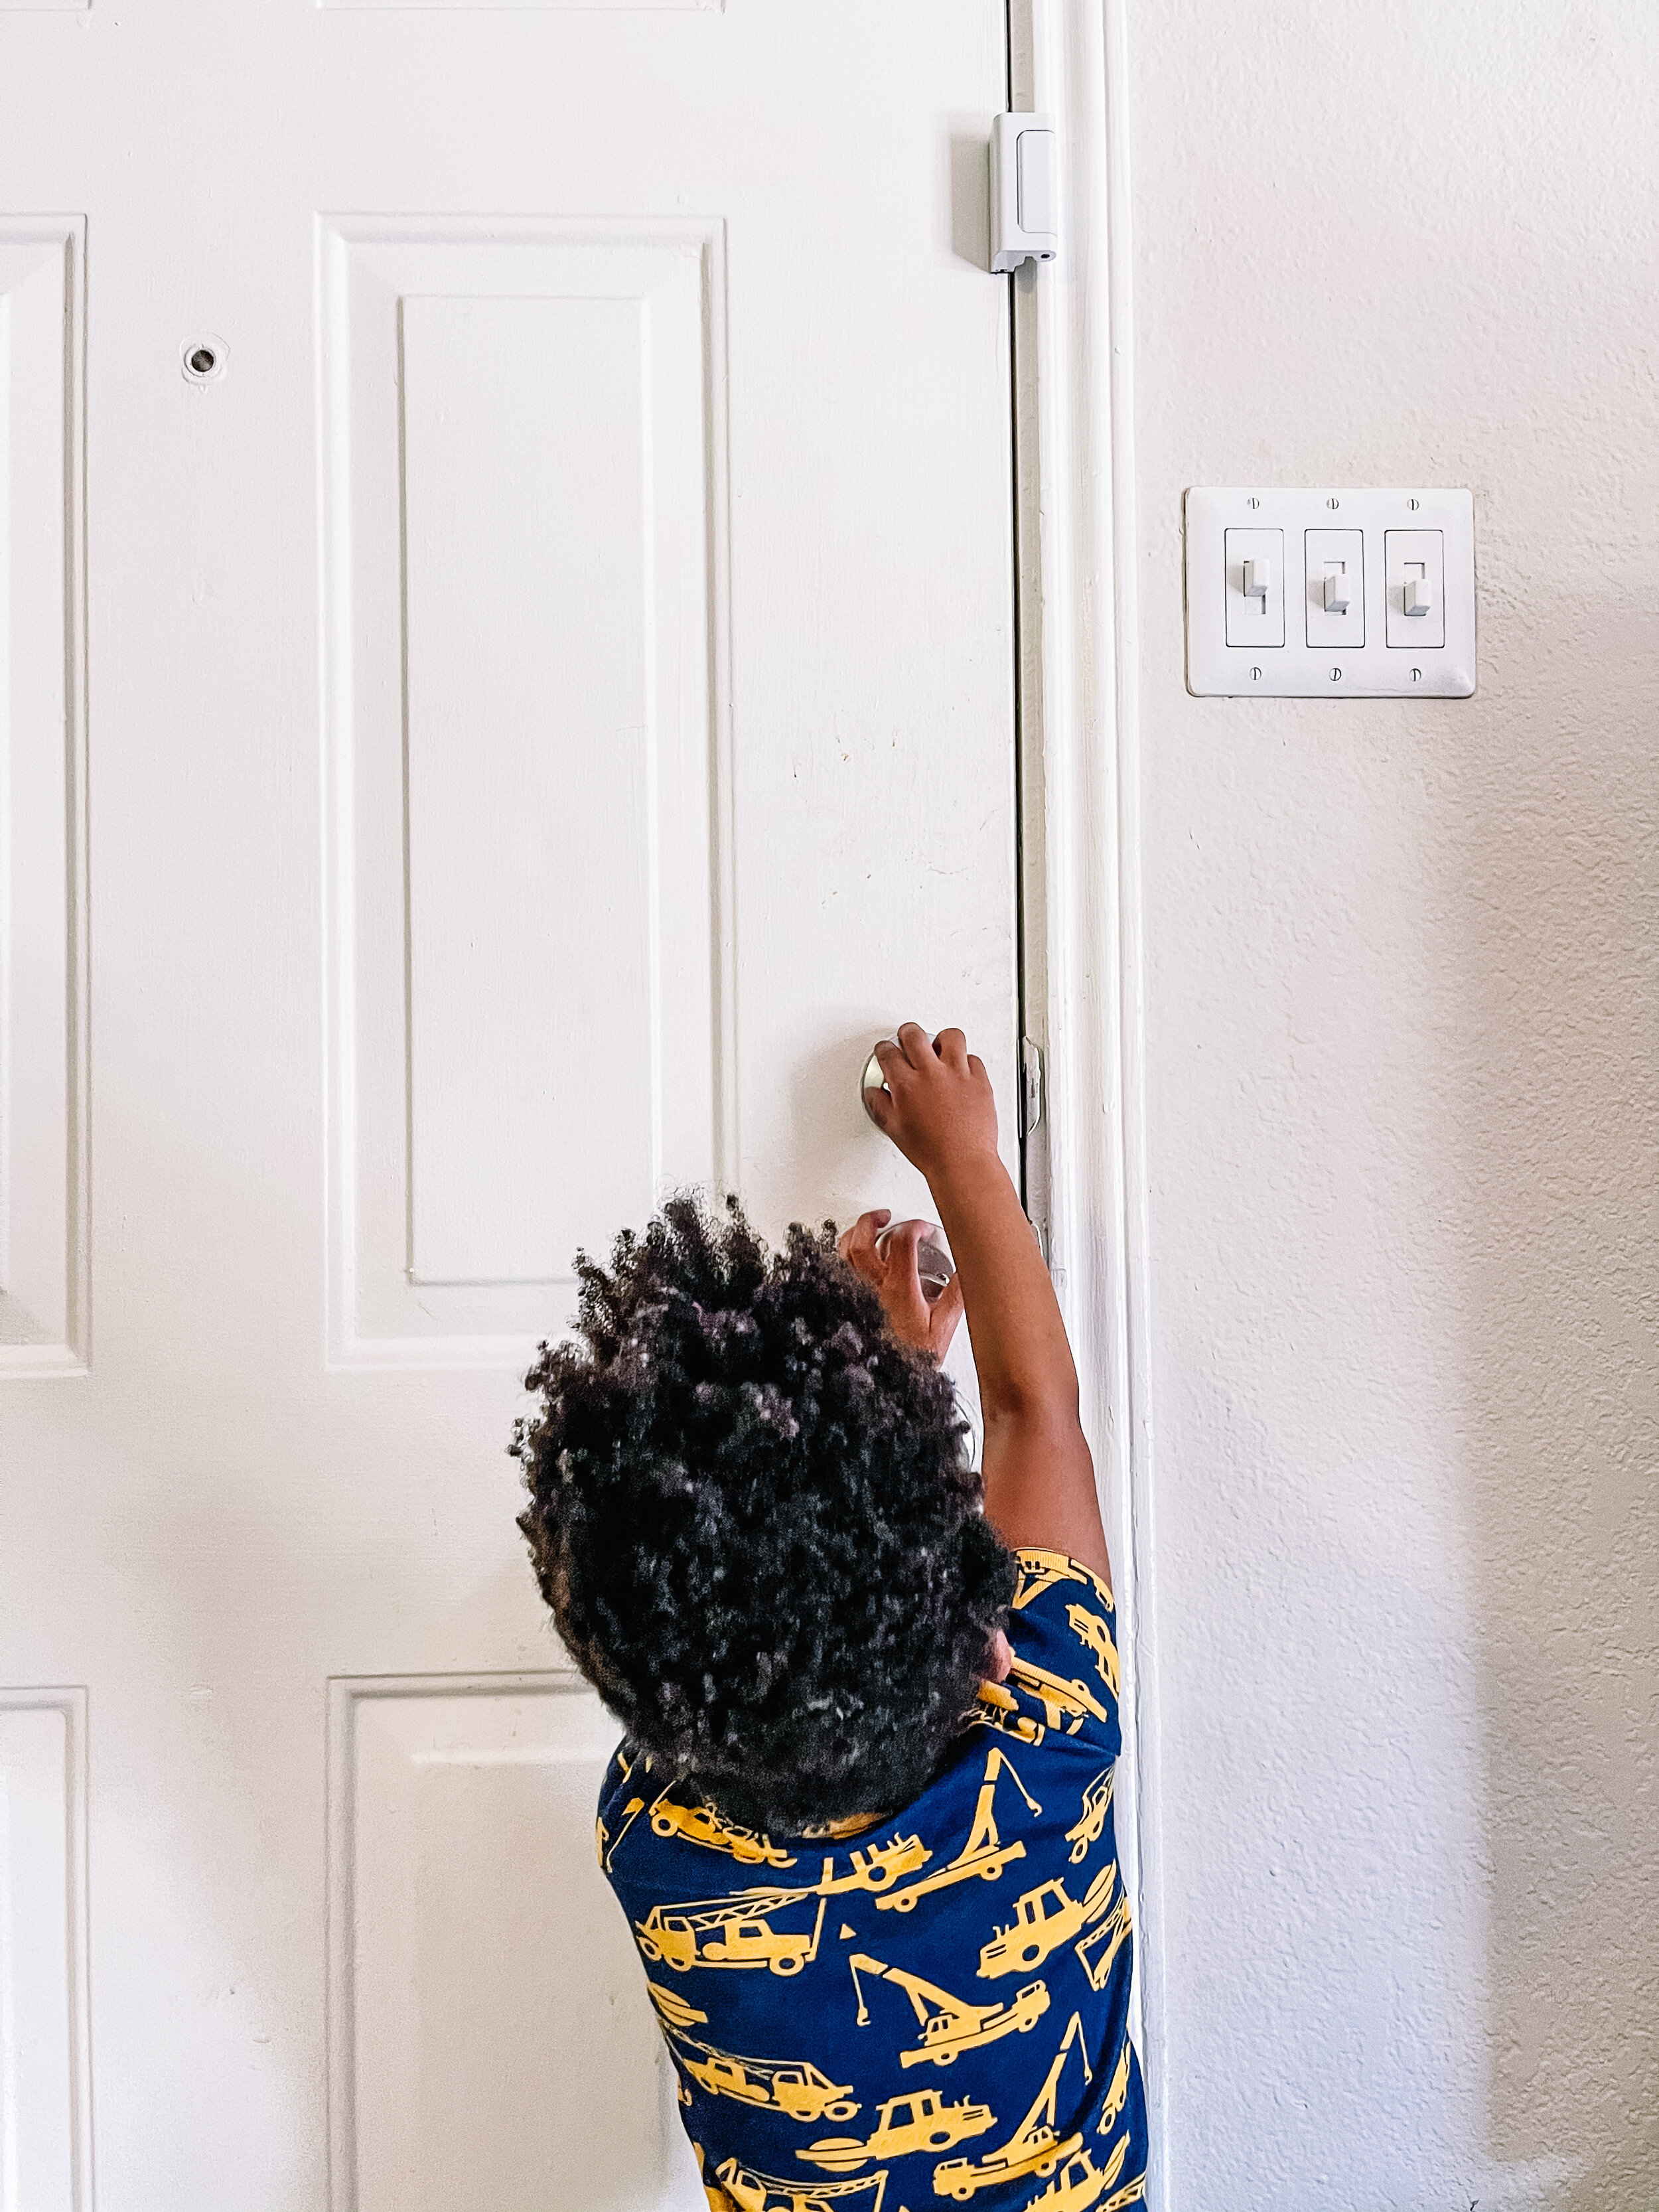 Toddler unlocking door.jpg